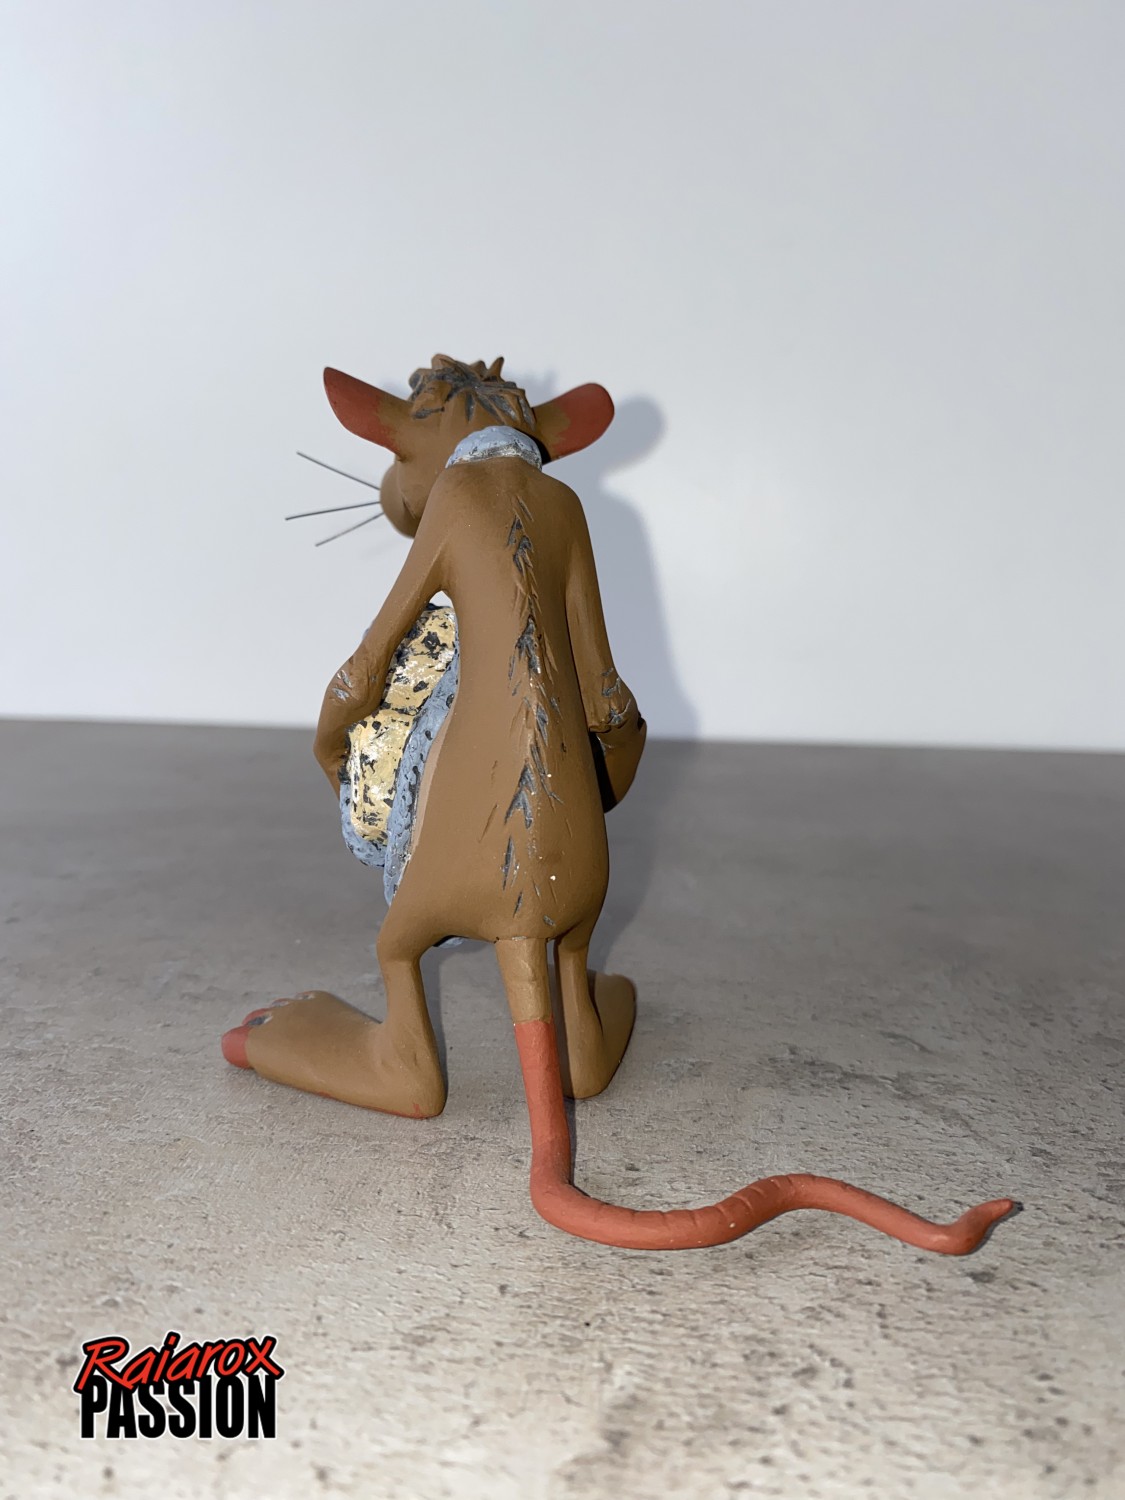 Le rat avec sa pierre